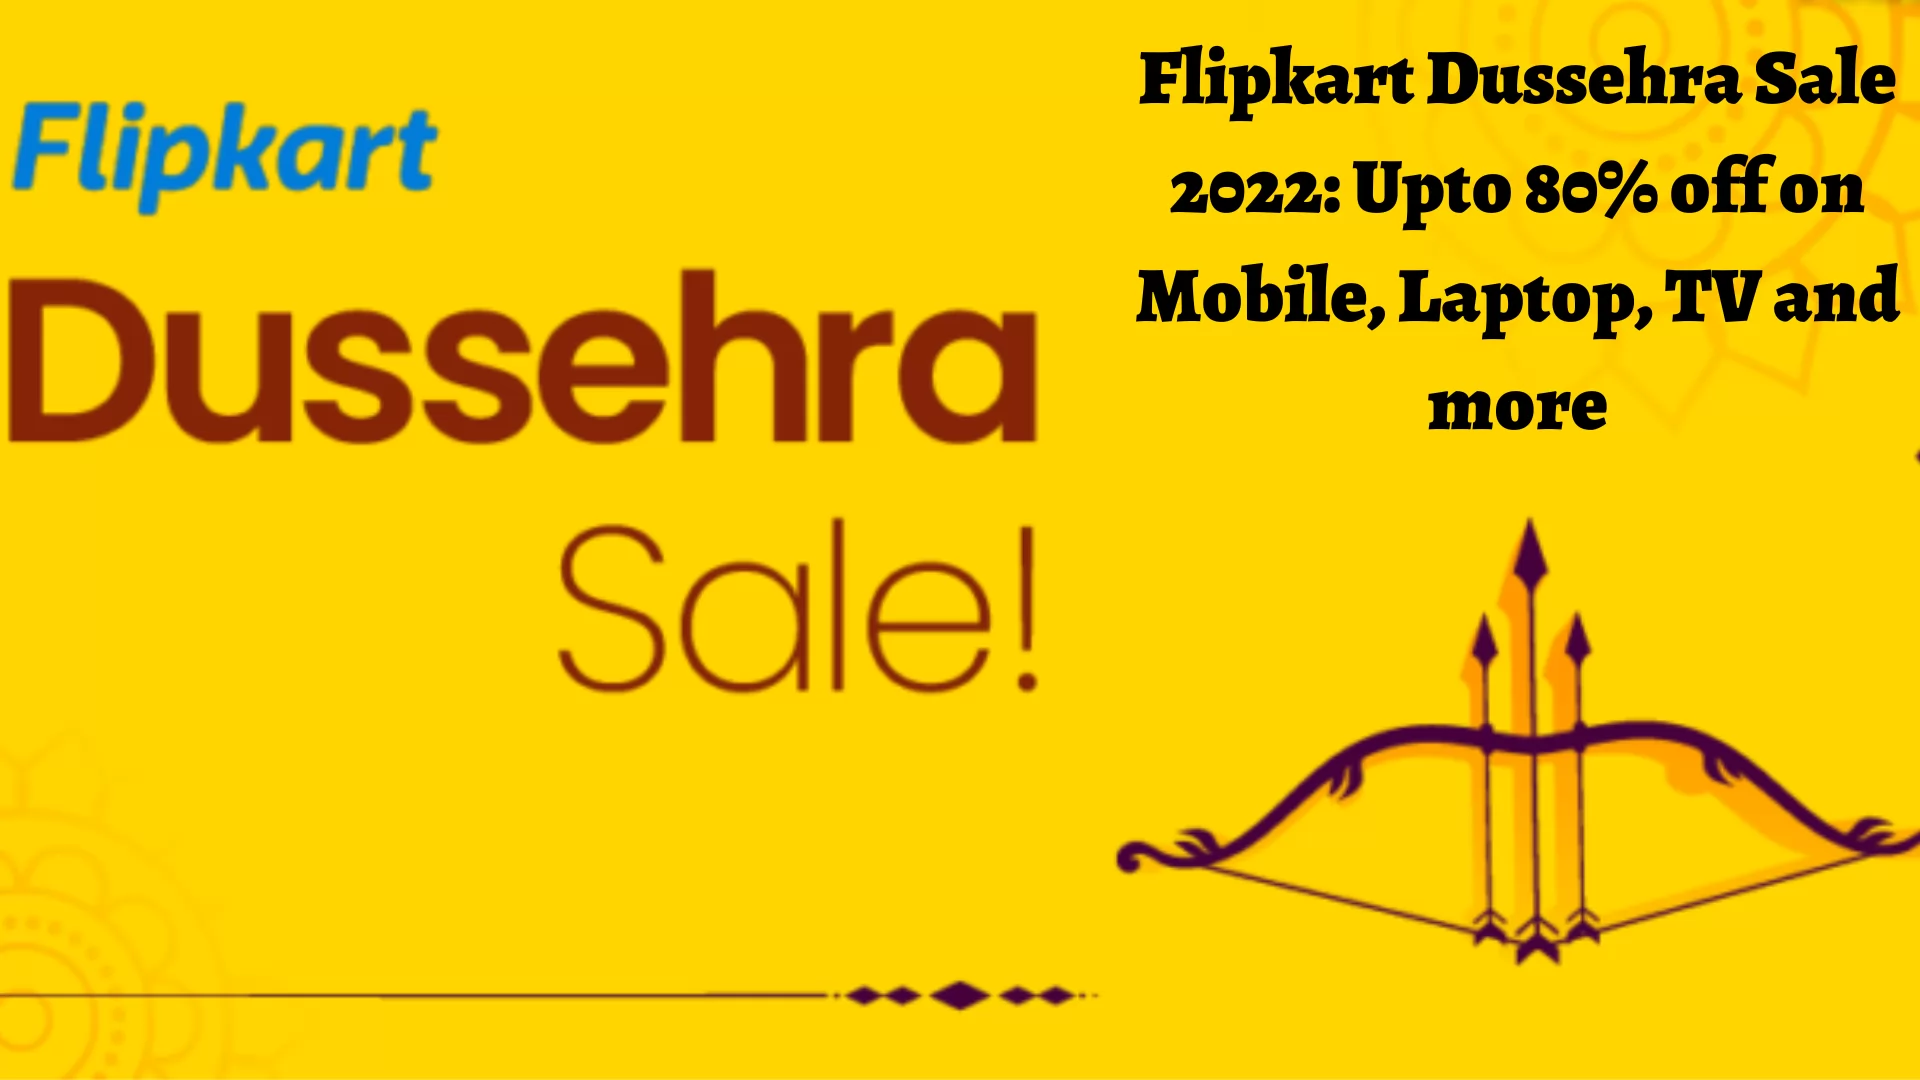 Flipkart Dussehra Sale 2020: Upto 80% off on Mobile, Laptop, TV and more